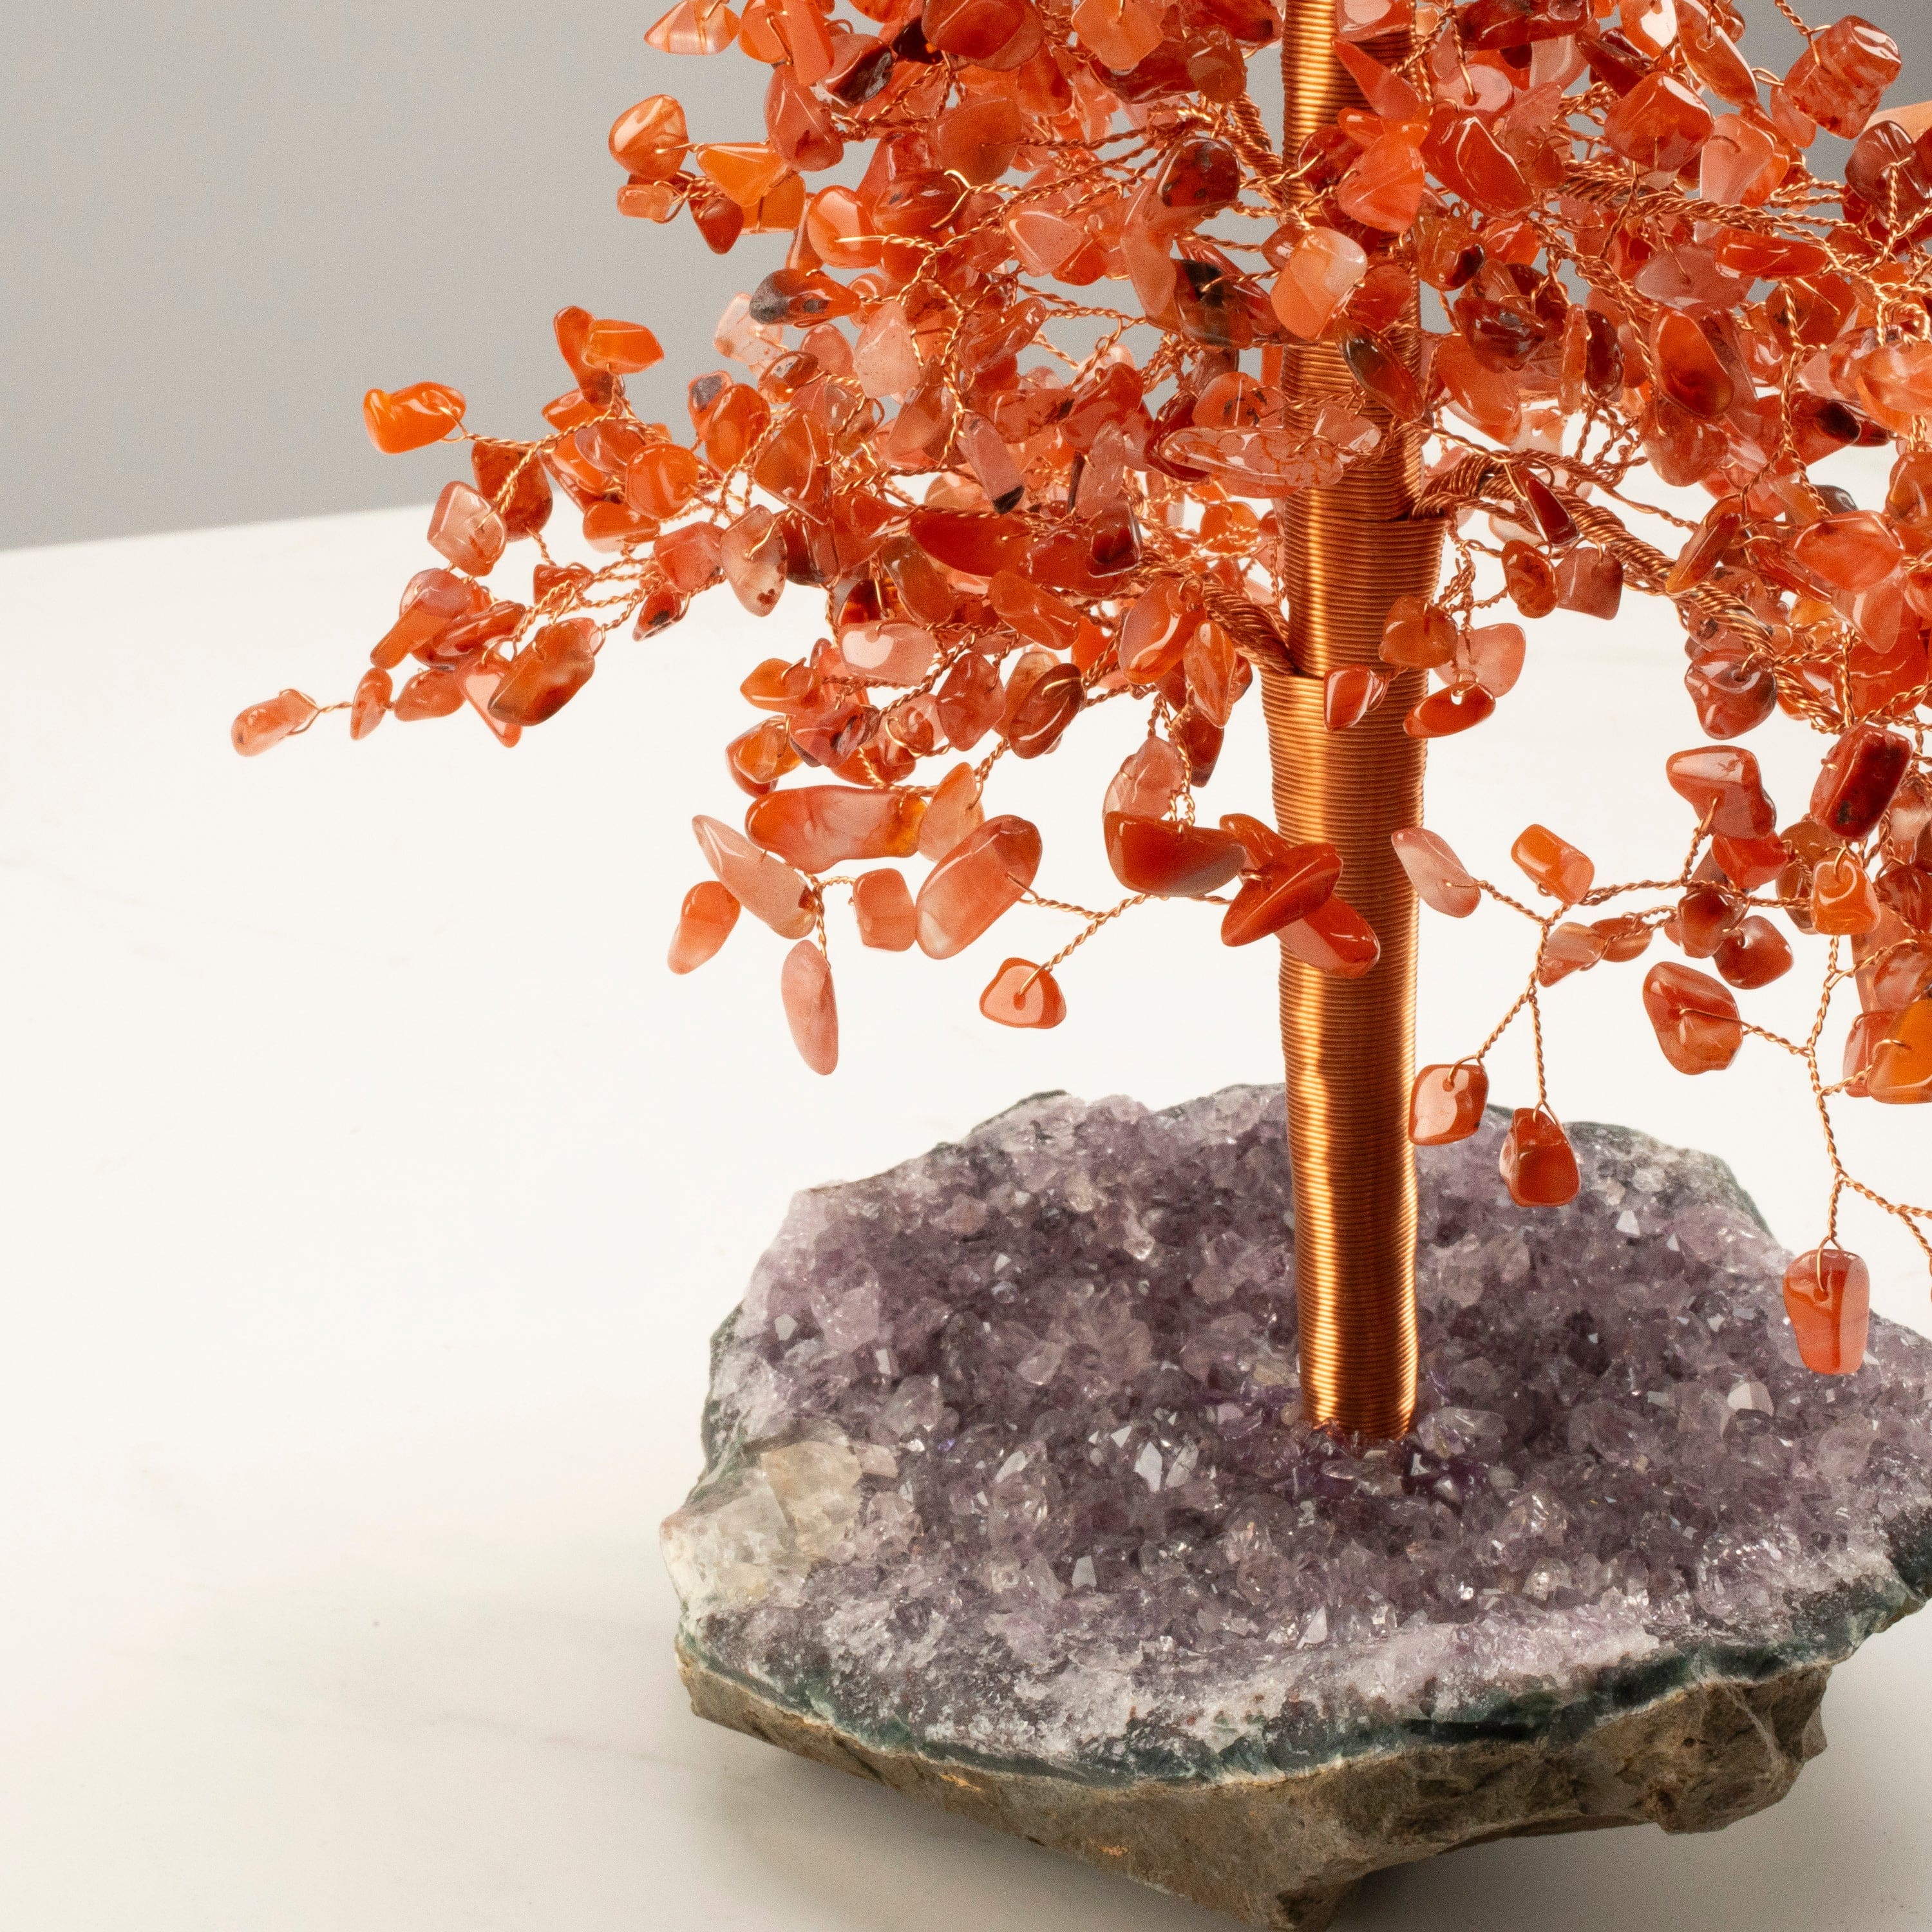  NARIBABU Carnelian Crystal Tree - Crystal Tree for